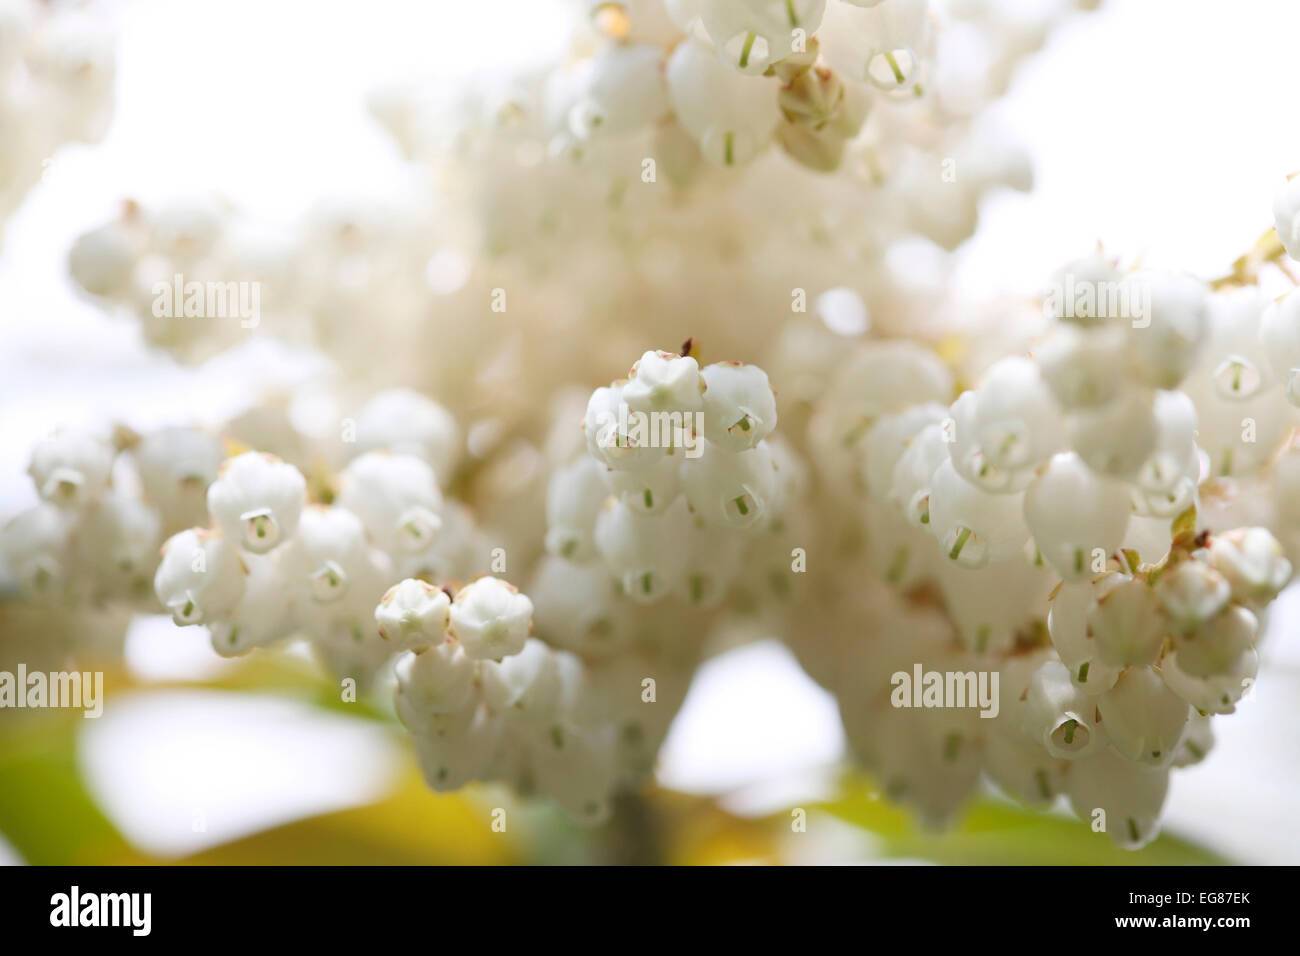 Ganz weiße Blumen Pieris Wald Flamme Strauch im Frühjahr Jane Ann Butler Fotografie JABP790 Stockfoto